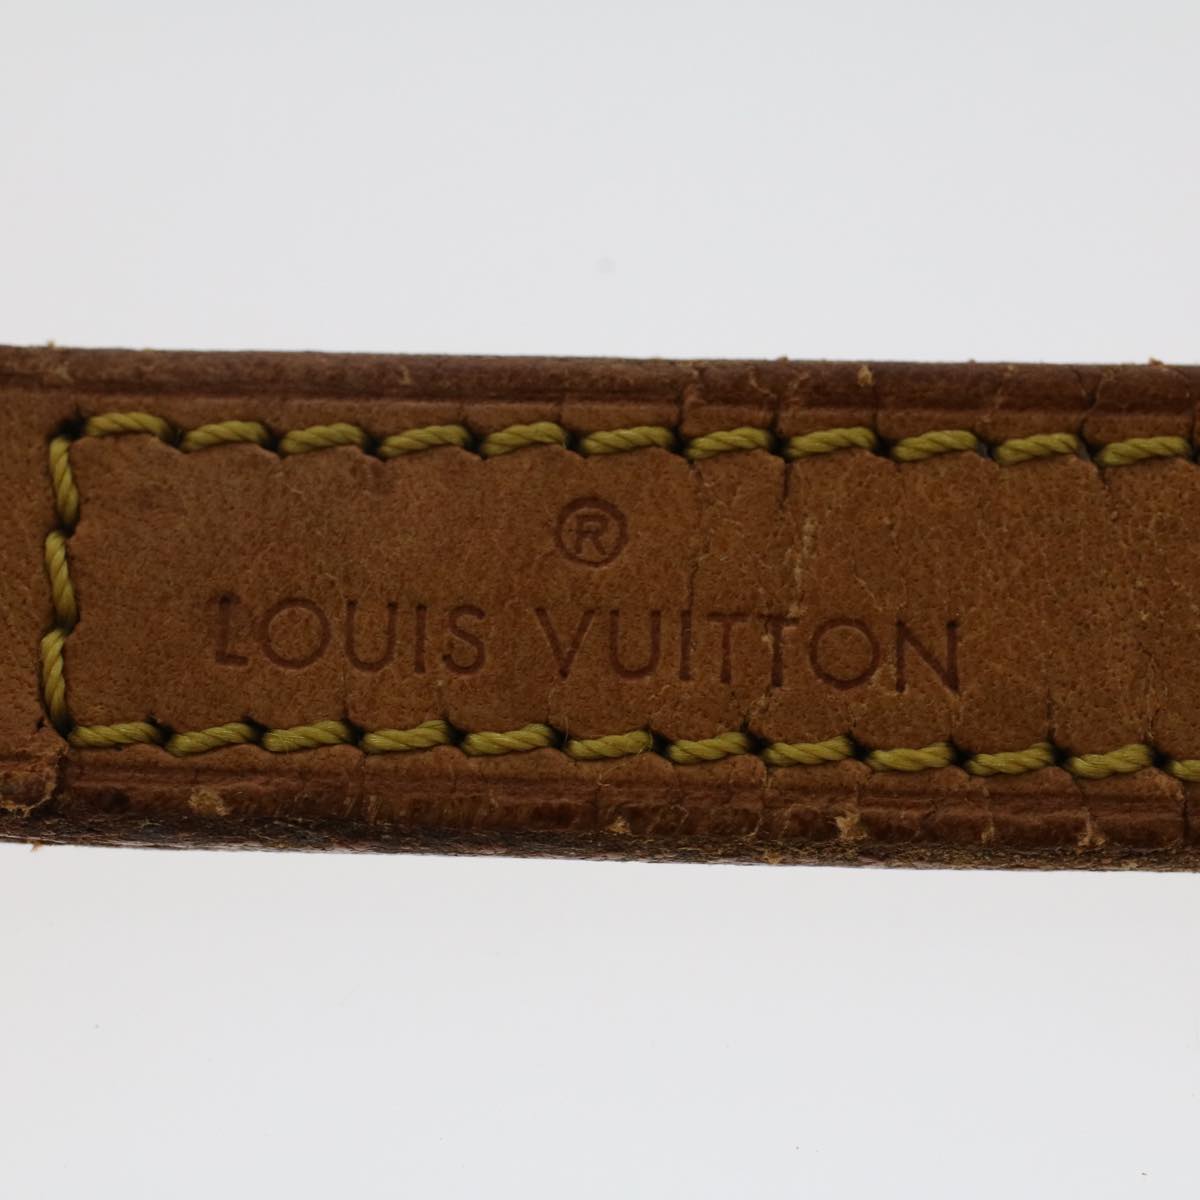 LOUIS VUITTON Shoulder Strap Leather 36.2"" Beige LV Auth 49175